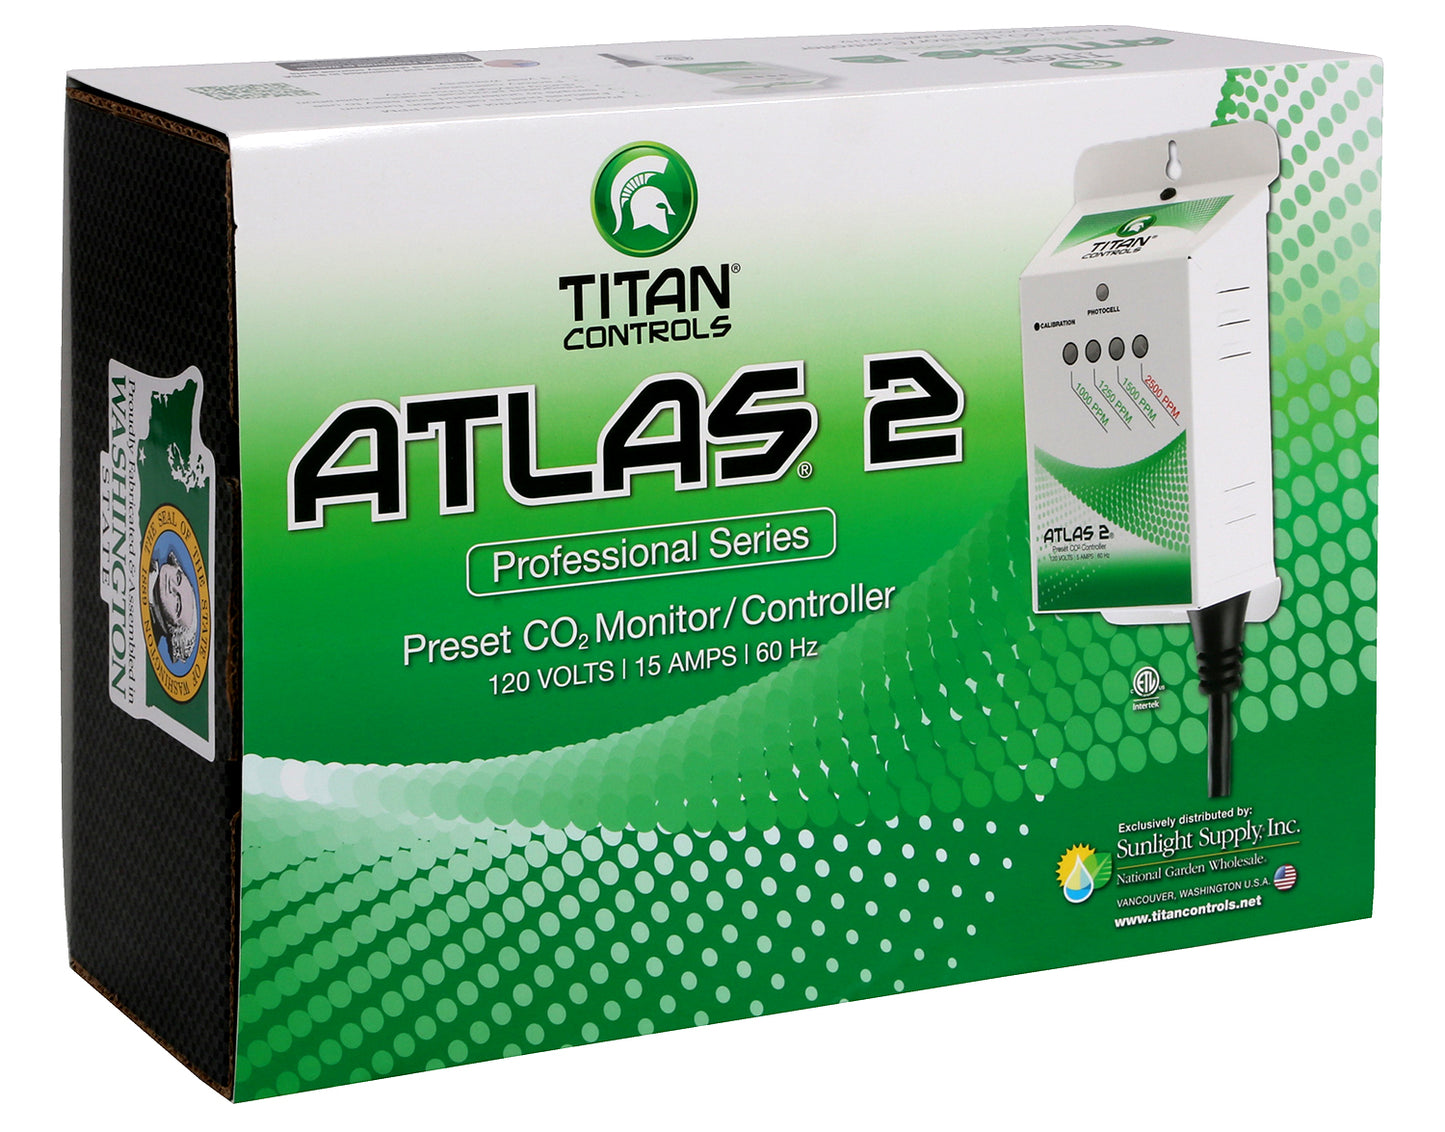 Titan Controls Atlas 2 Preset Co2 Monitor/Controller